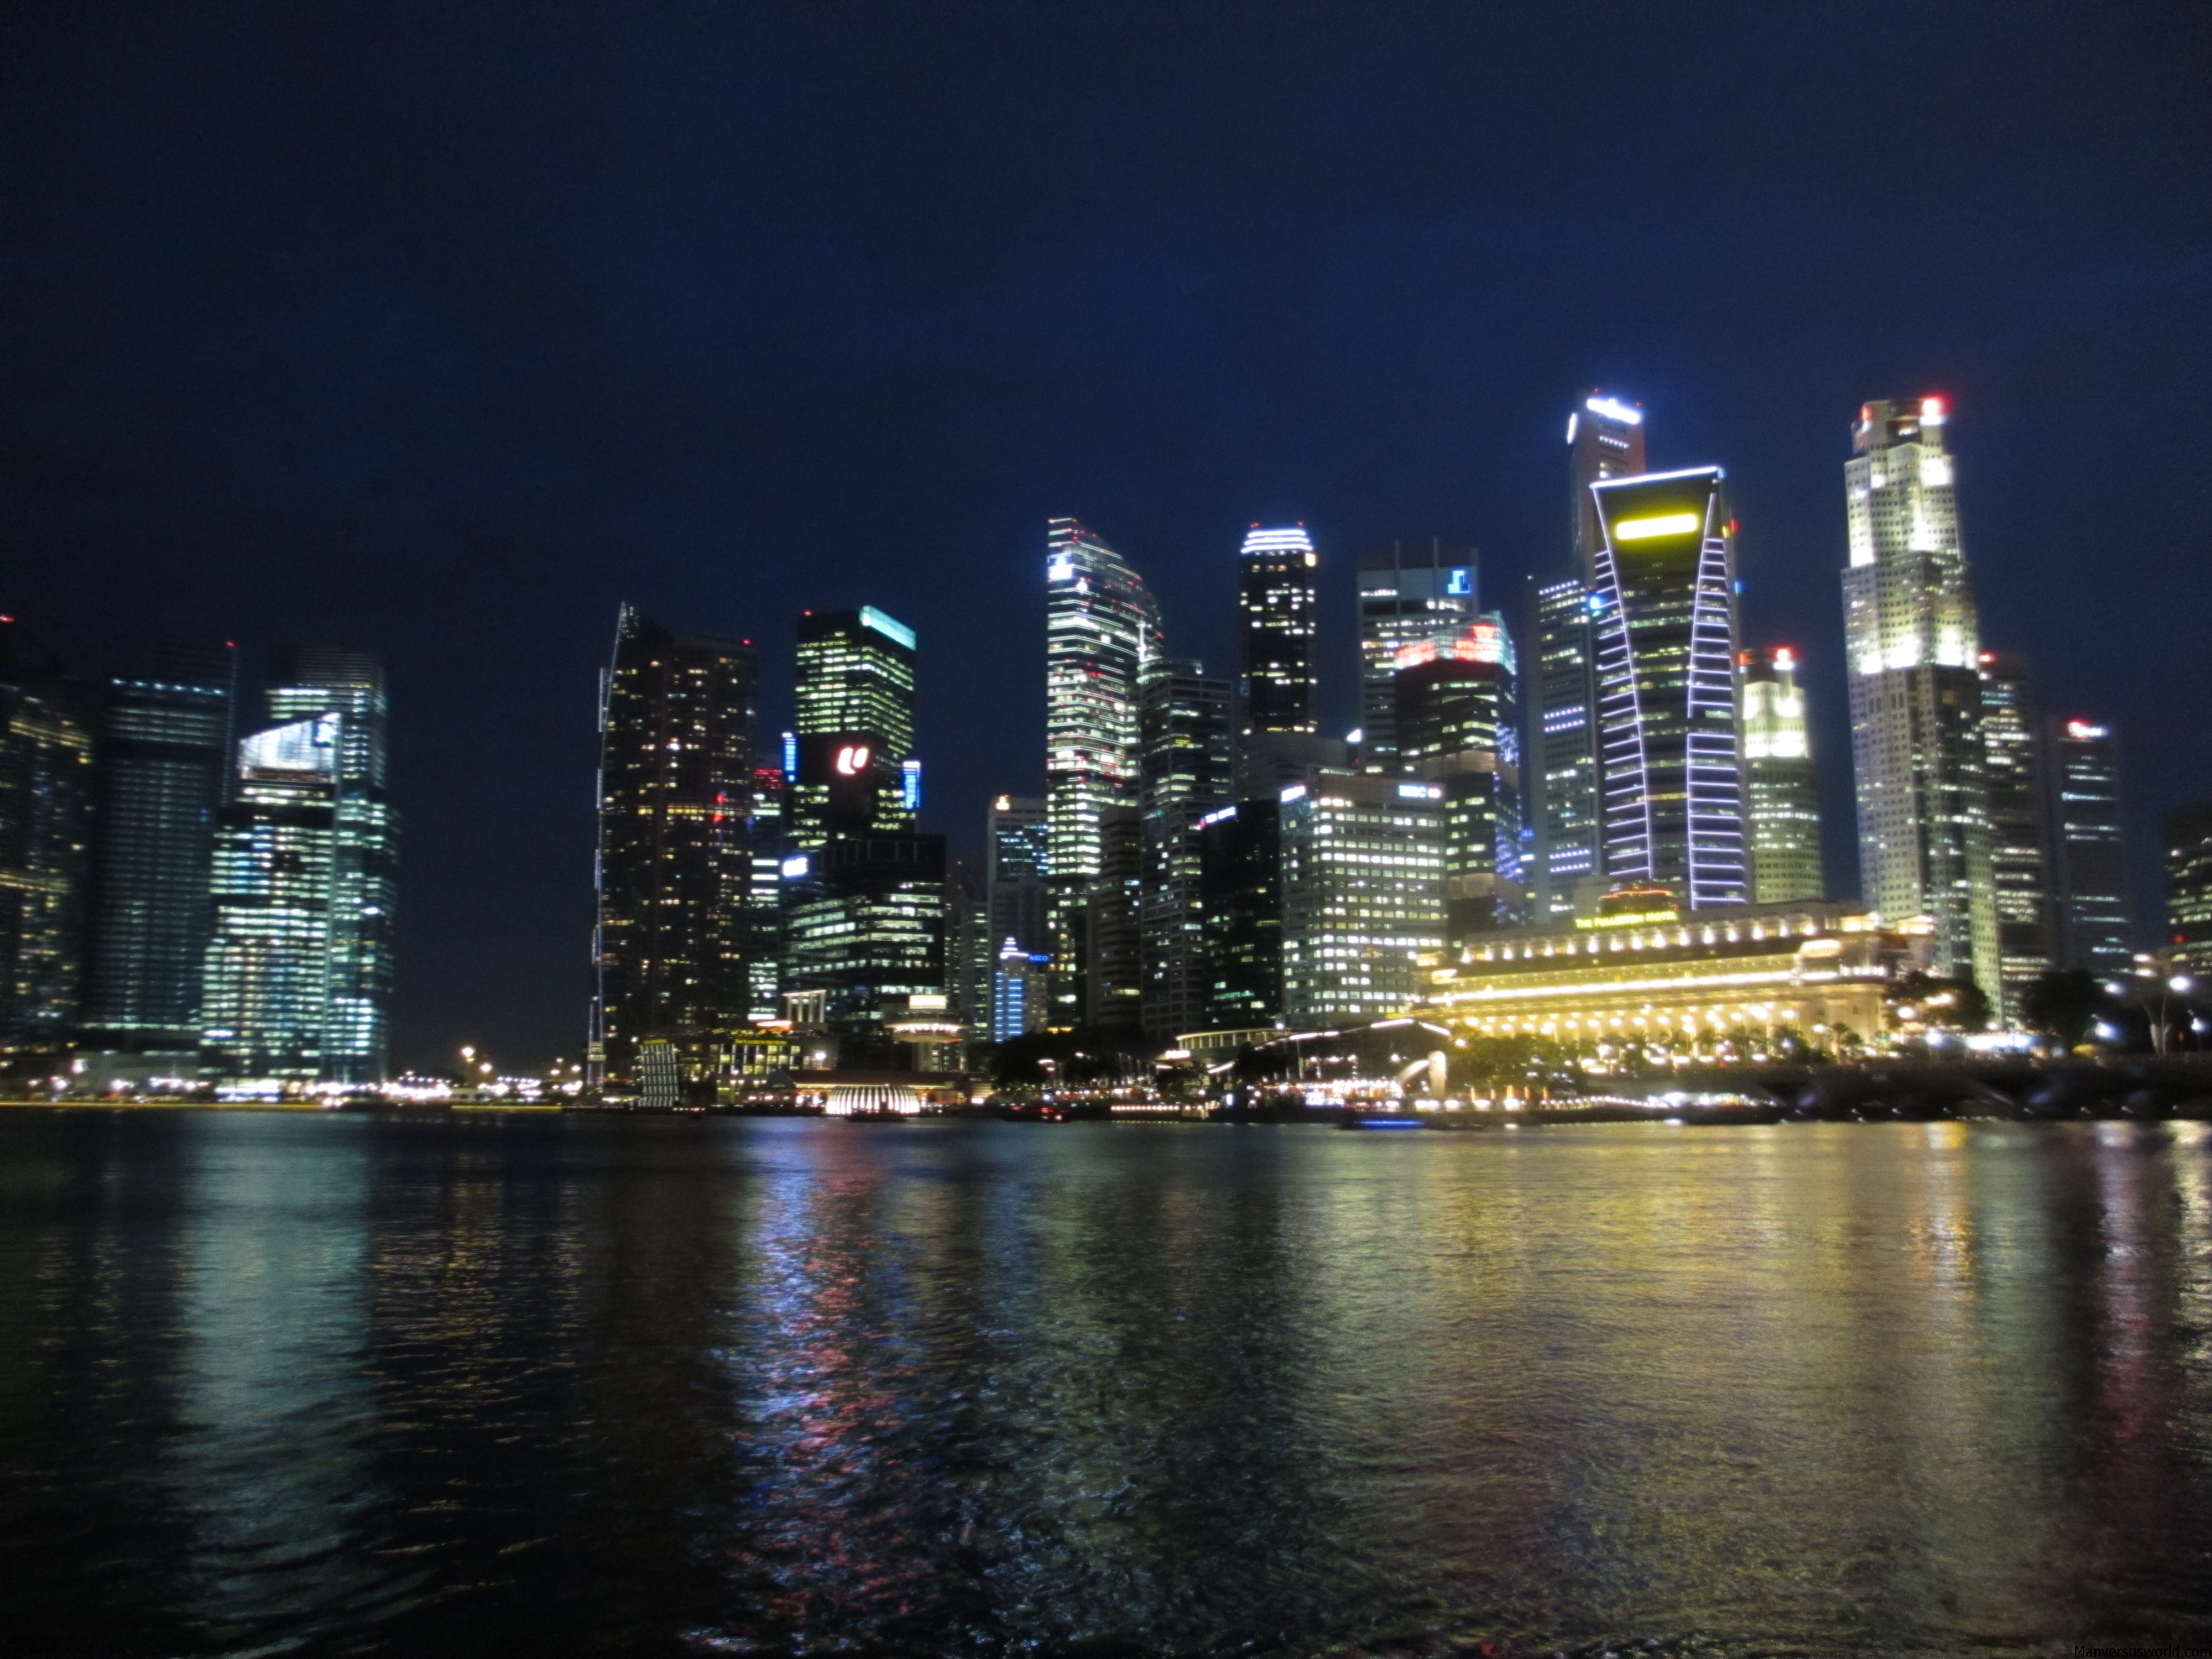 The Singapore skyline by night